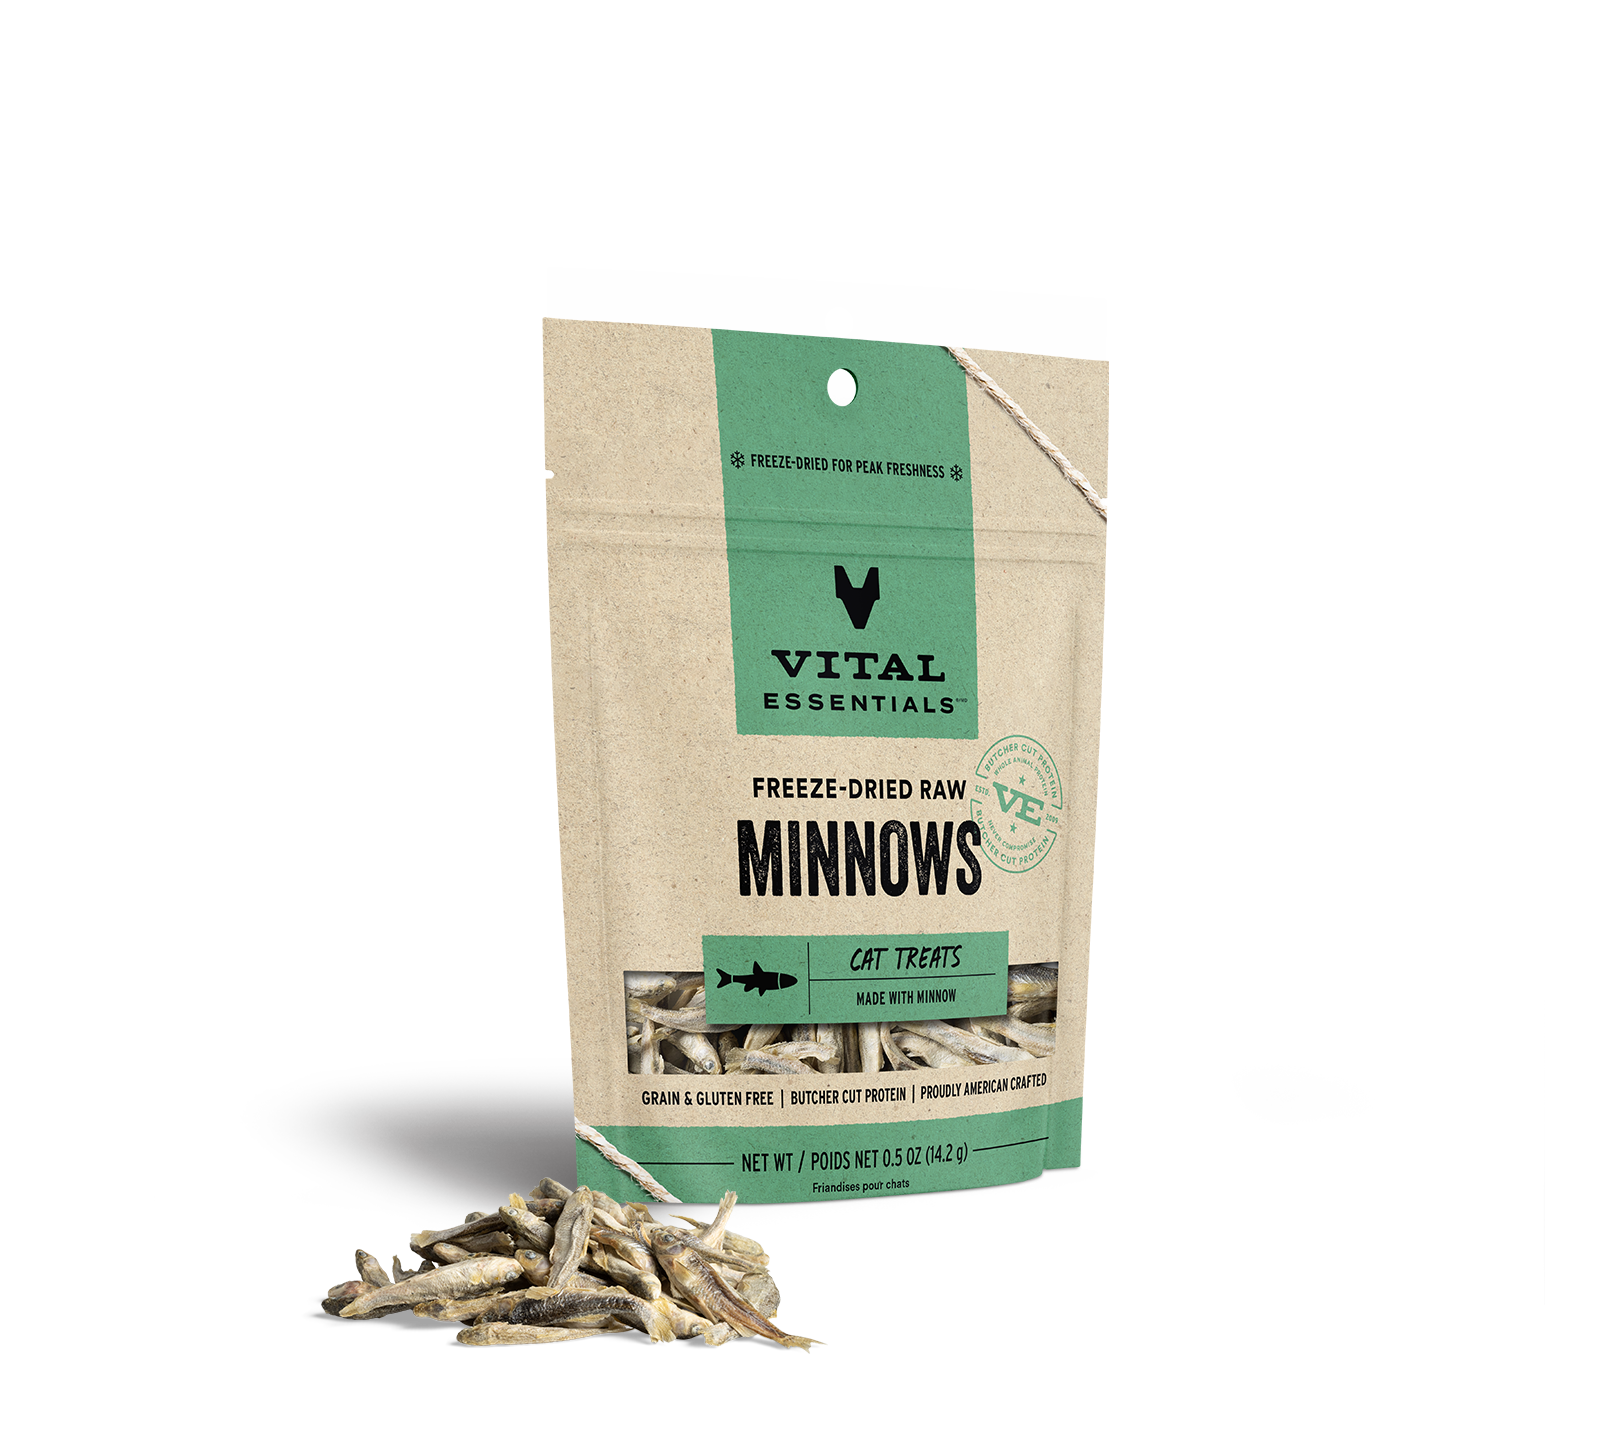 Vital Essentials Freeze-Dried Minnows Cat Treats, 0.5 oz - Health/First Aid